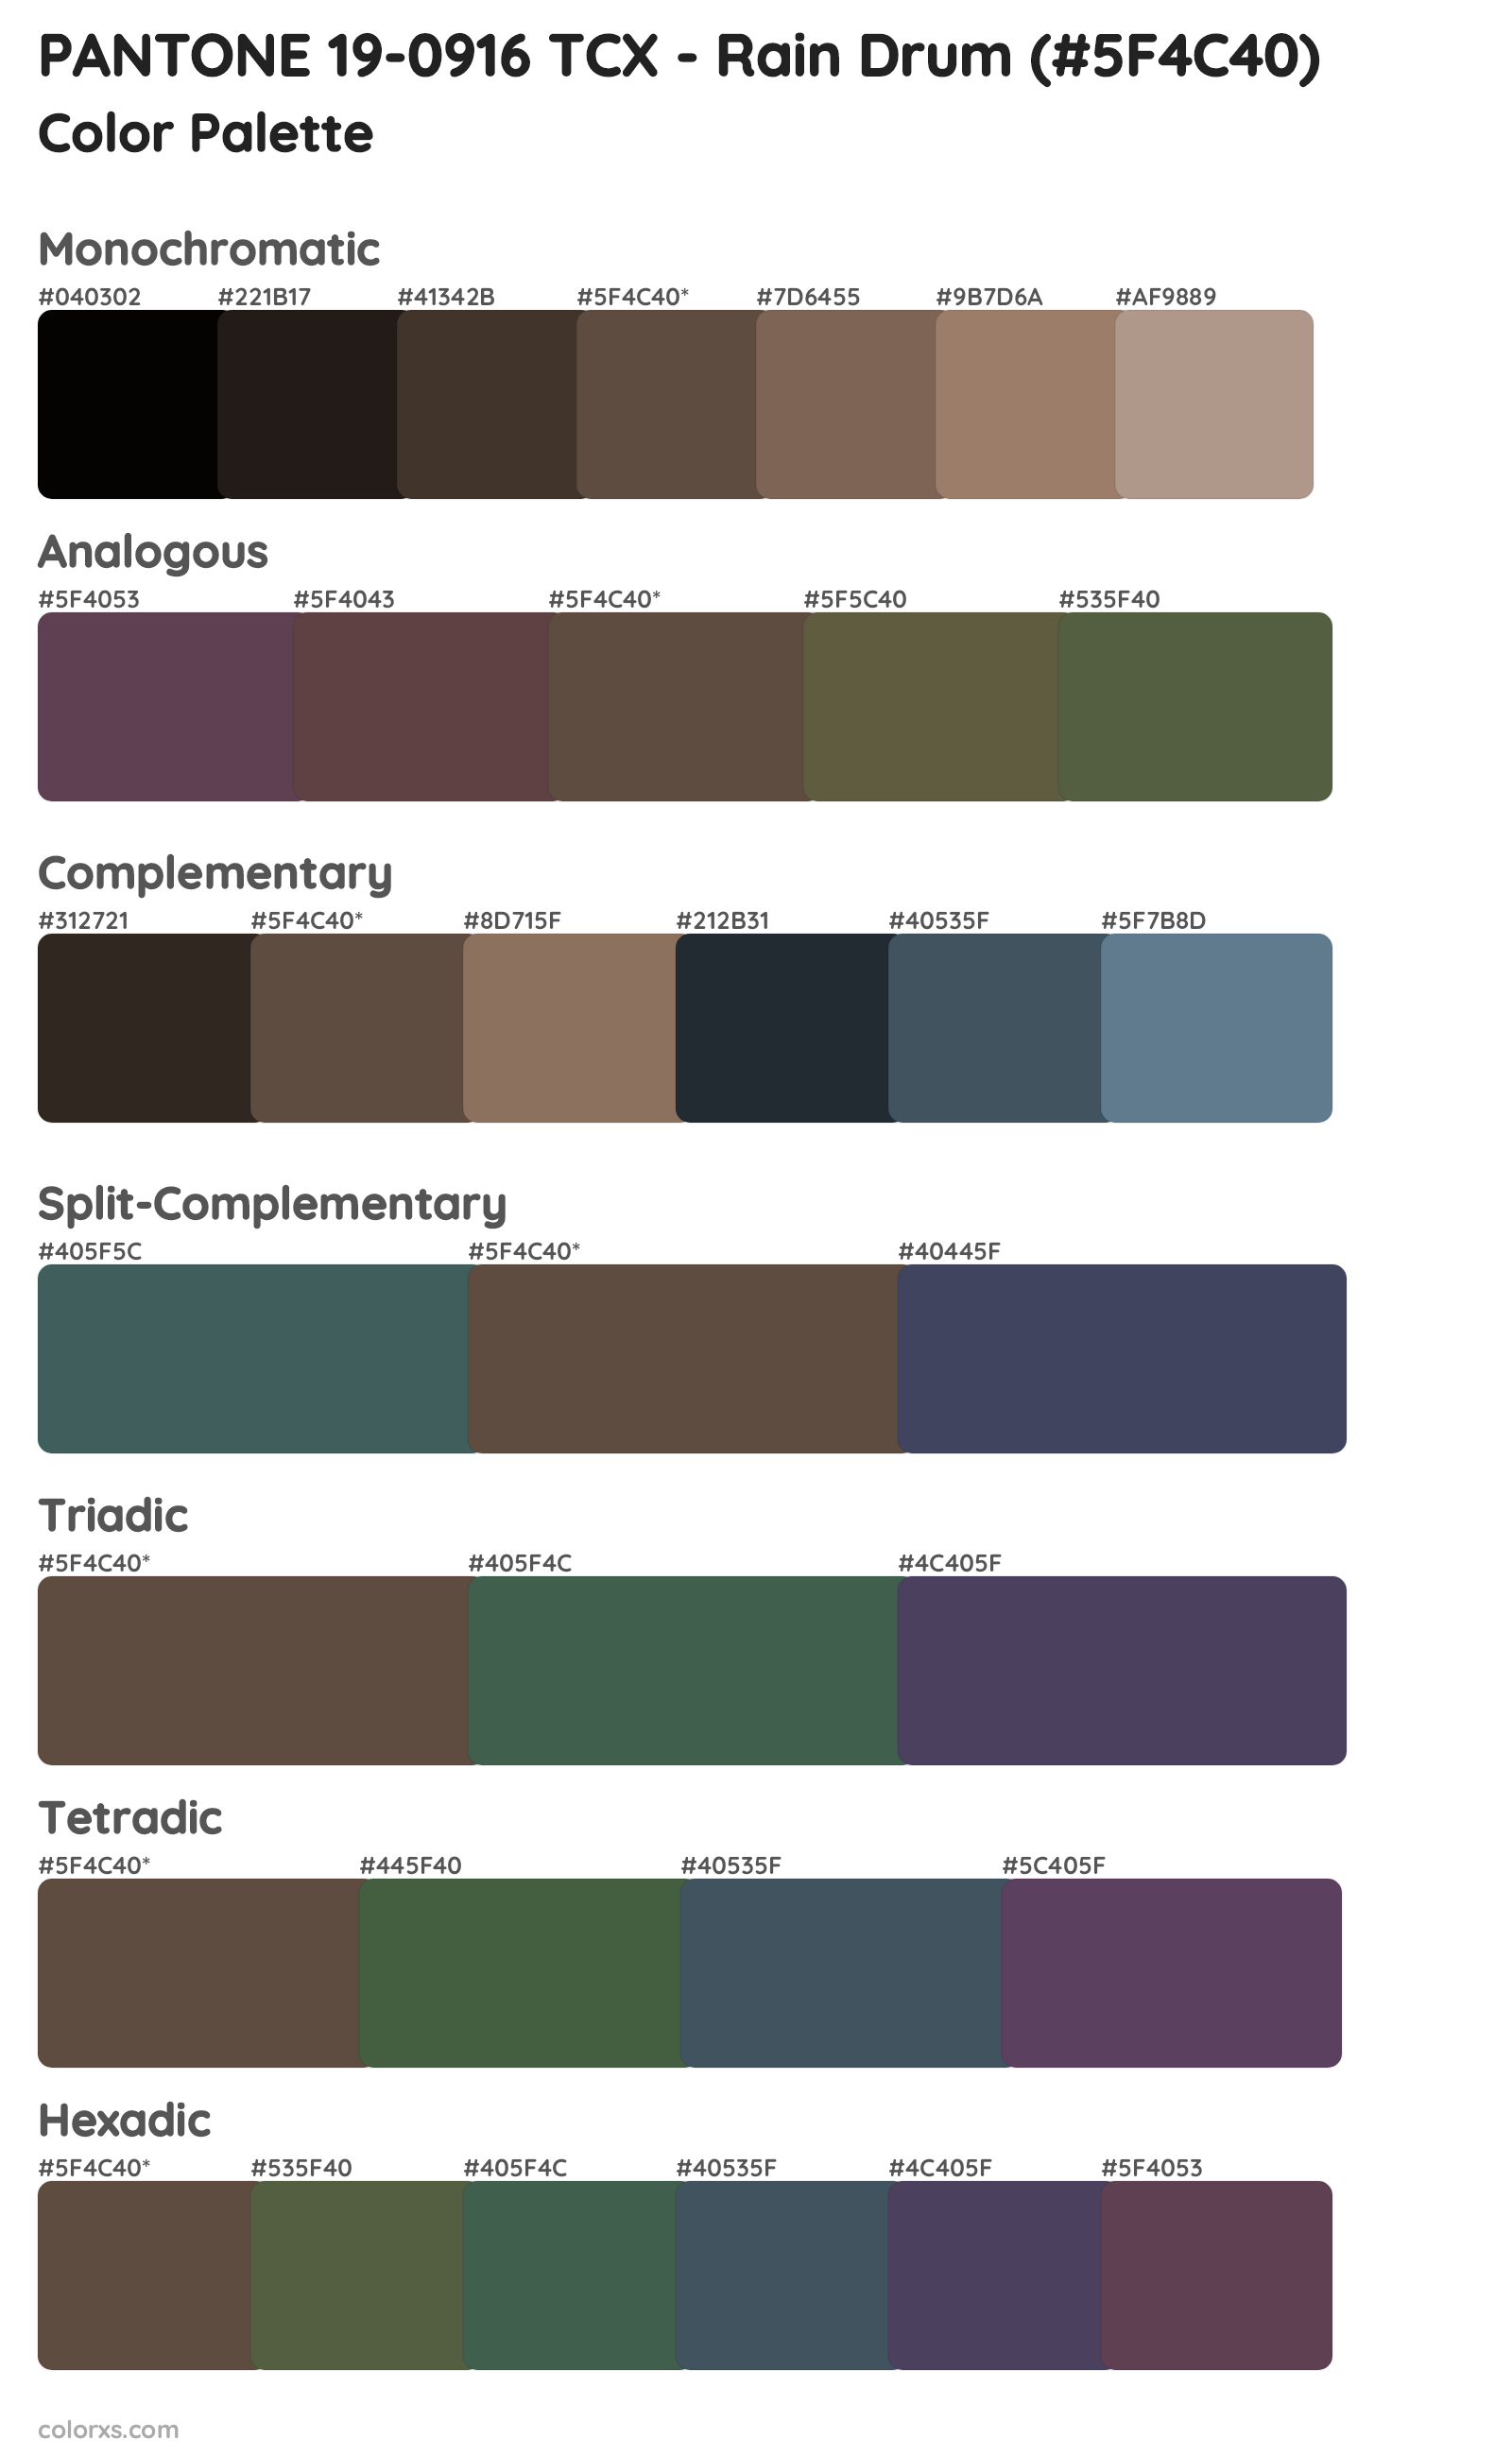 PANTONE 19-0916 TCX - Rain Drum Color Scheme Palettes